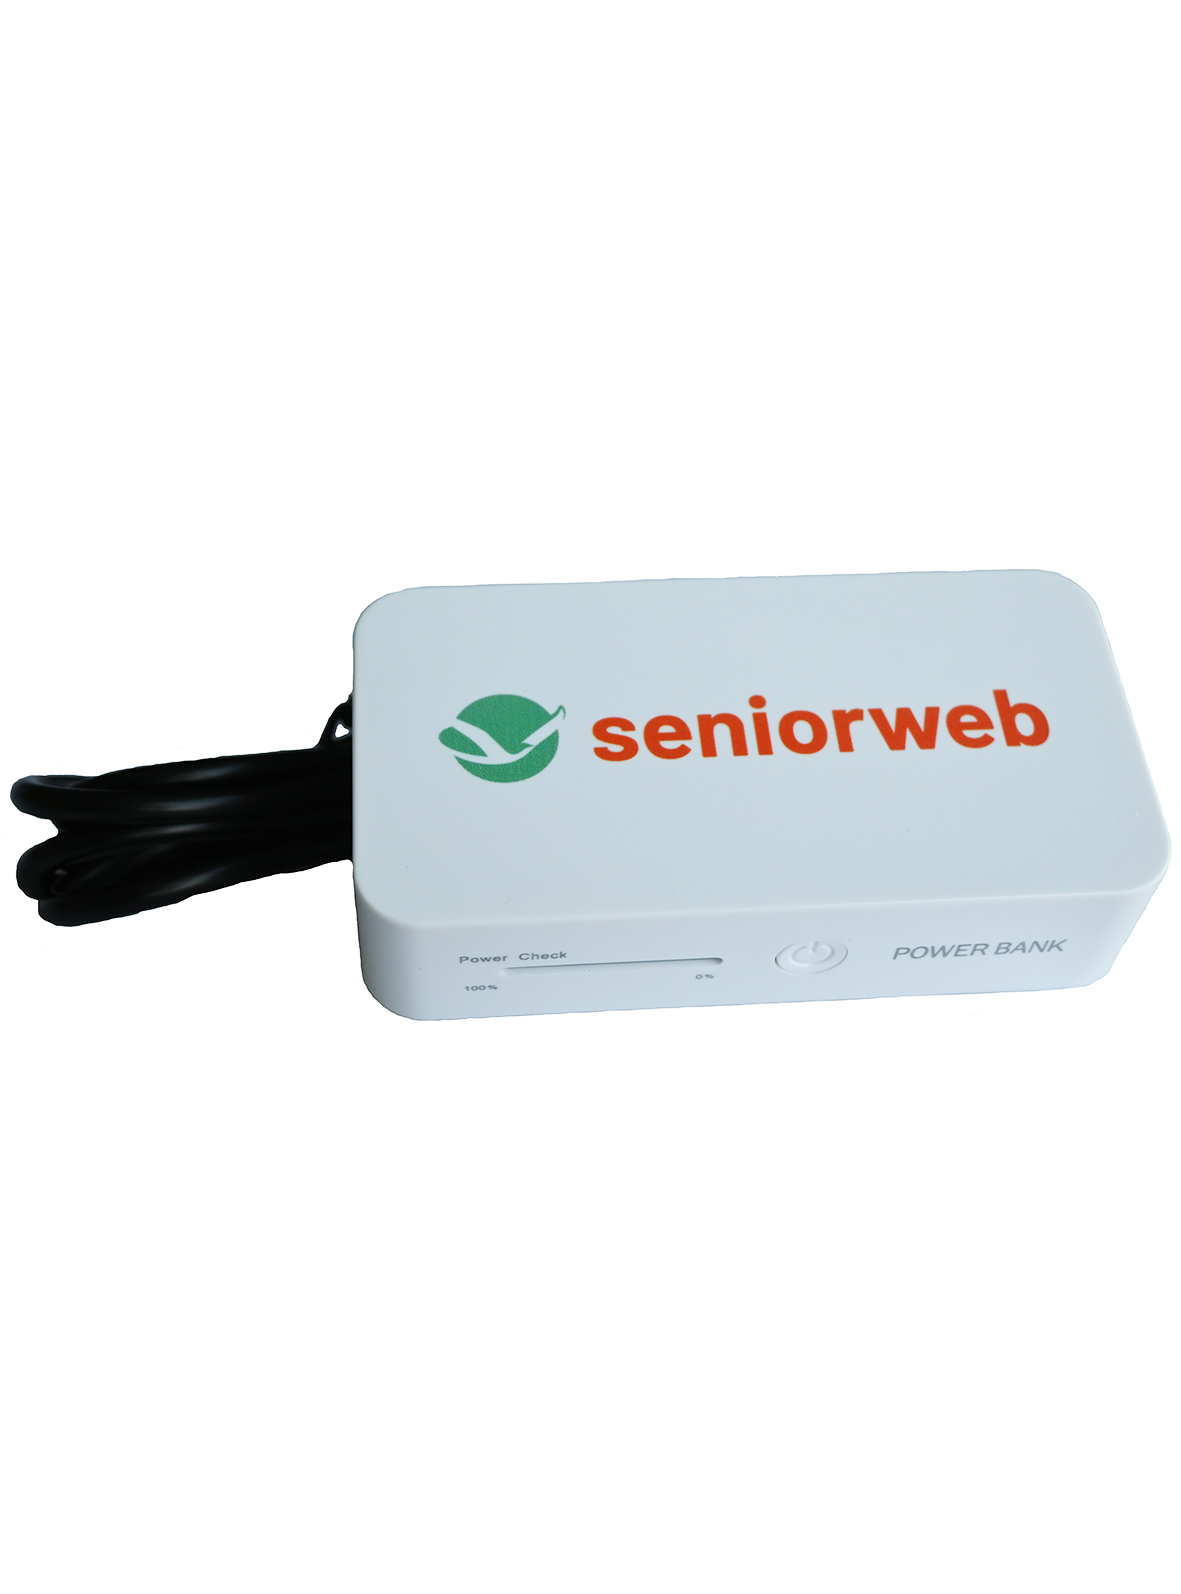 SeniorWeb Powerbank